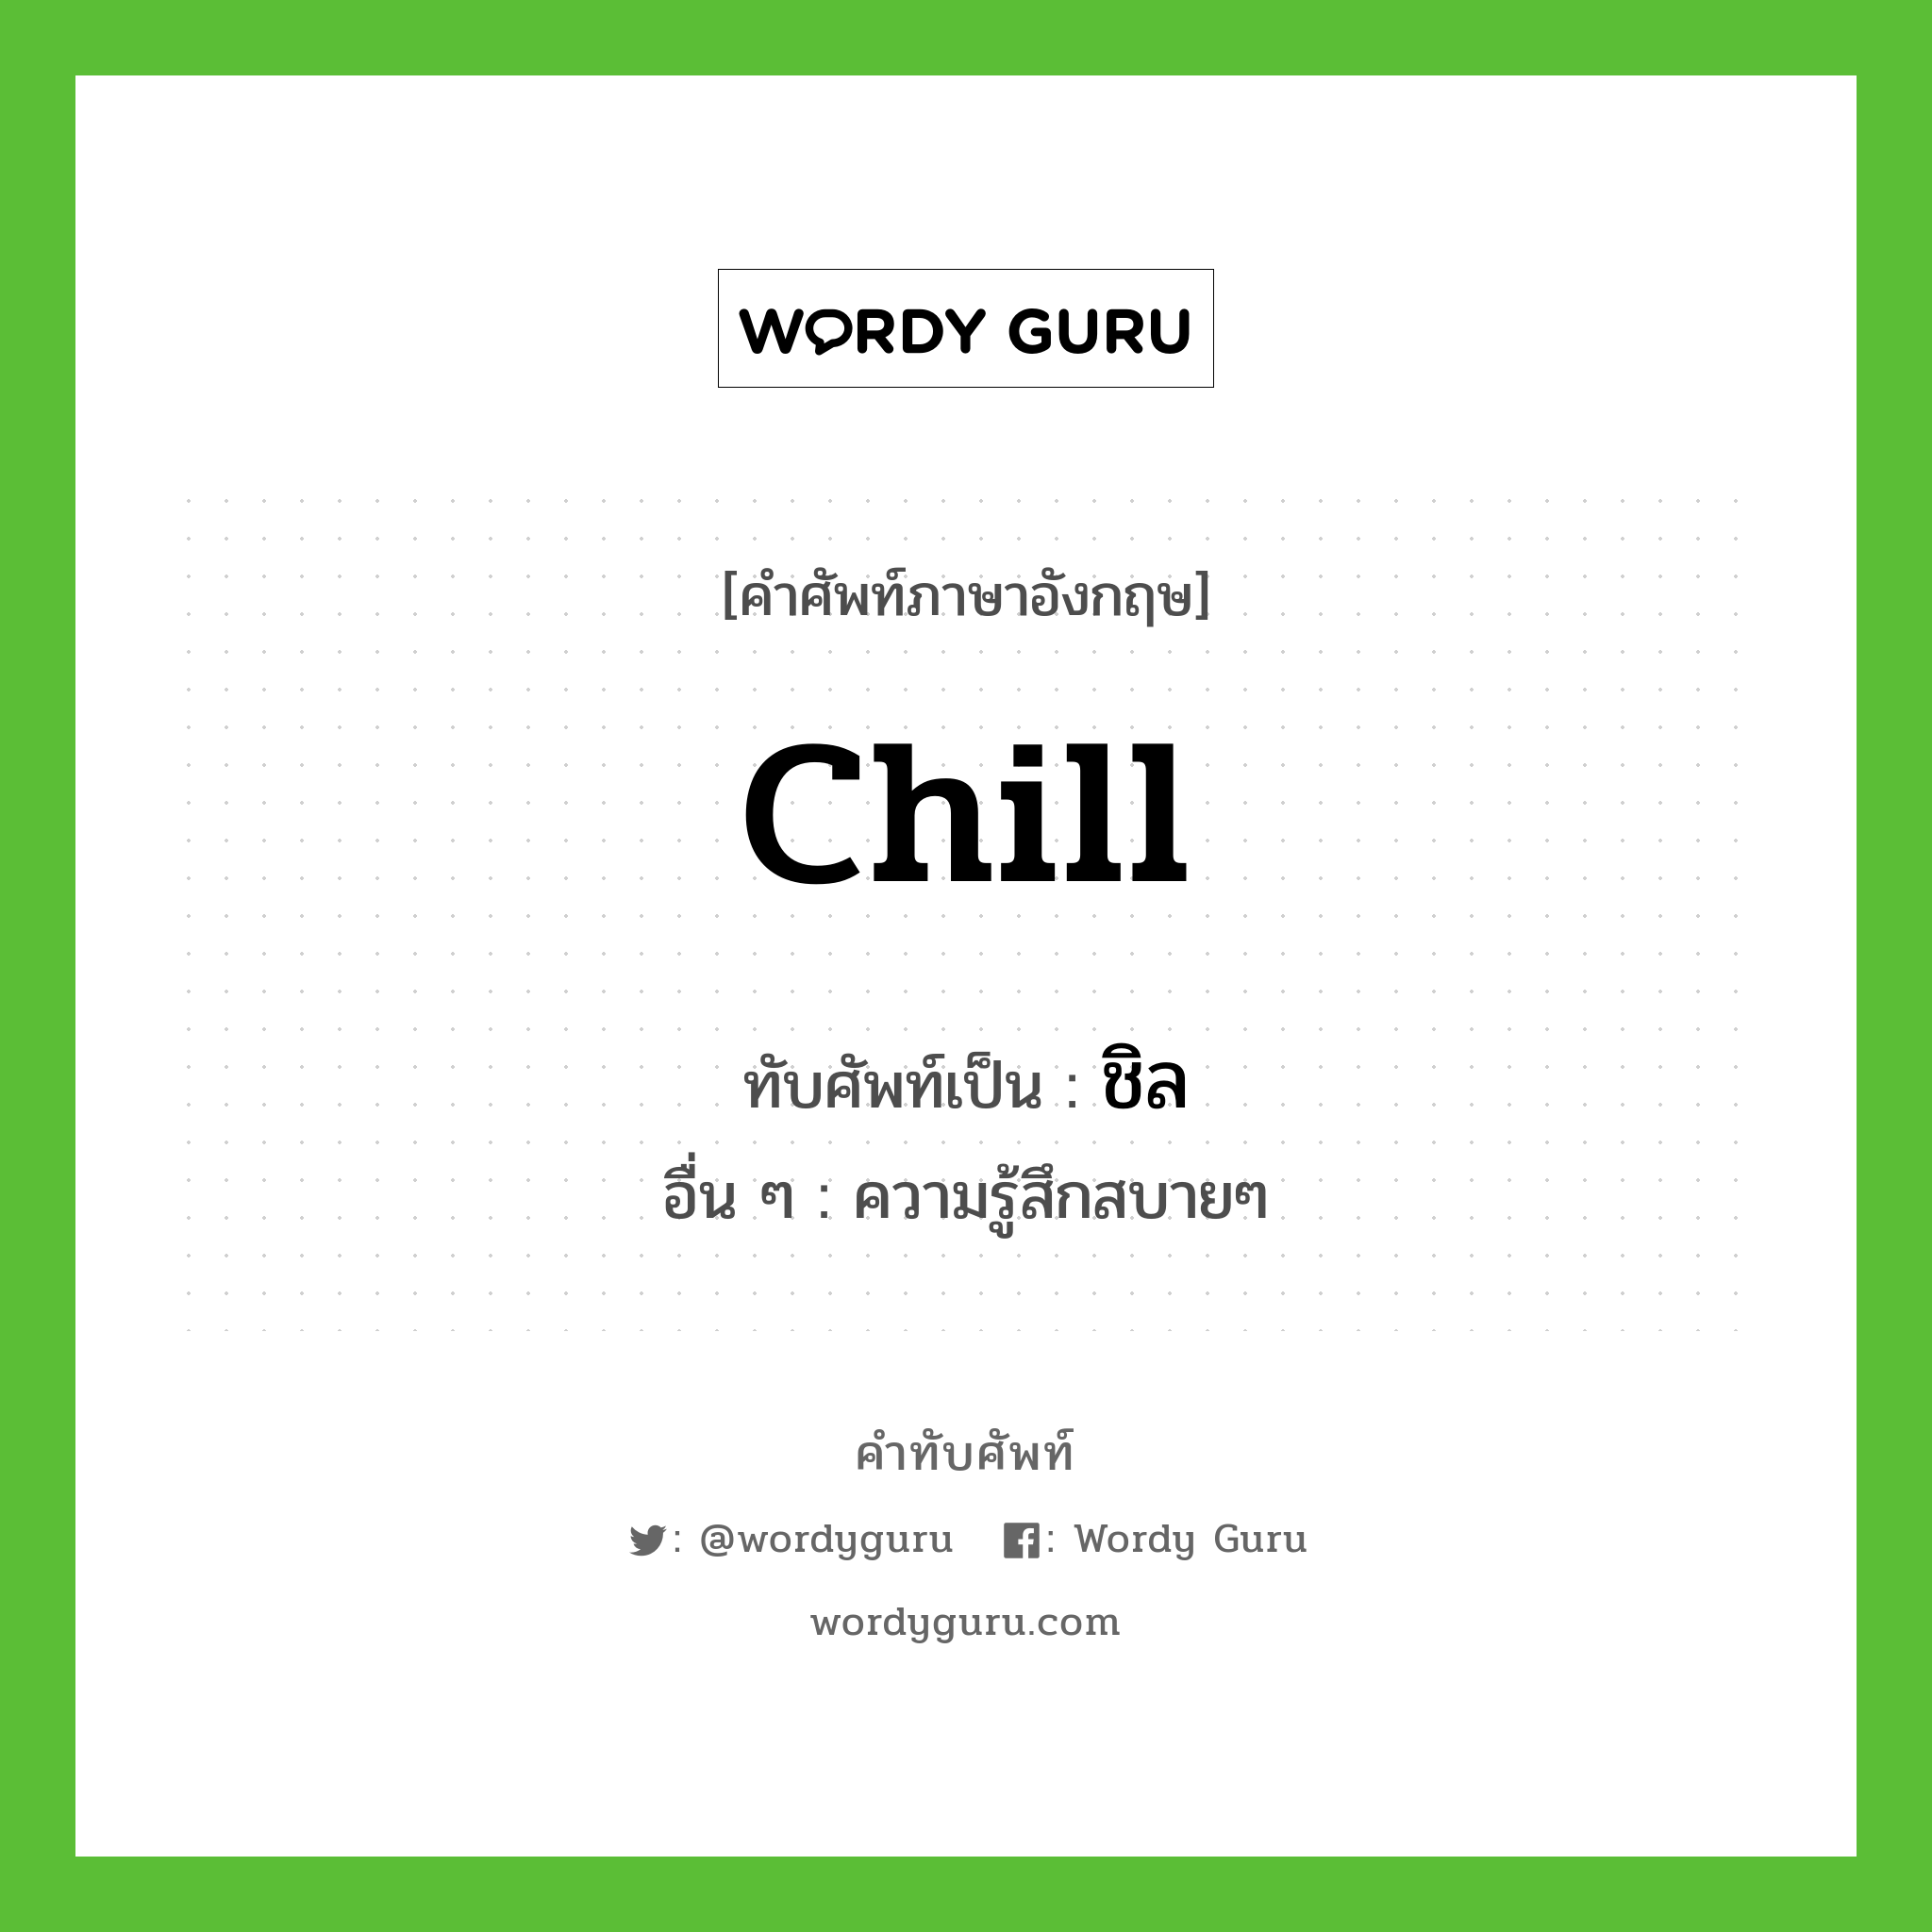 chill เขียนเป็นคำไทยว่าอะไร?, คำศัพท์ภาษาอังกฤษ chill ทับศัพท์เป็น ชิล อื่น ๆ ความรู้สึกสบายๆ